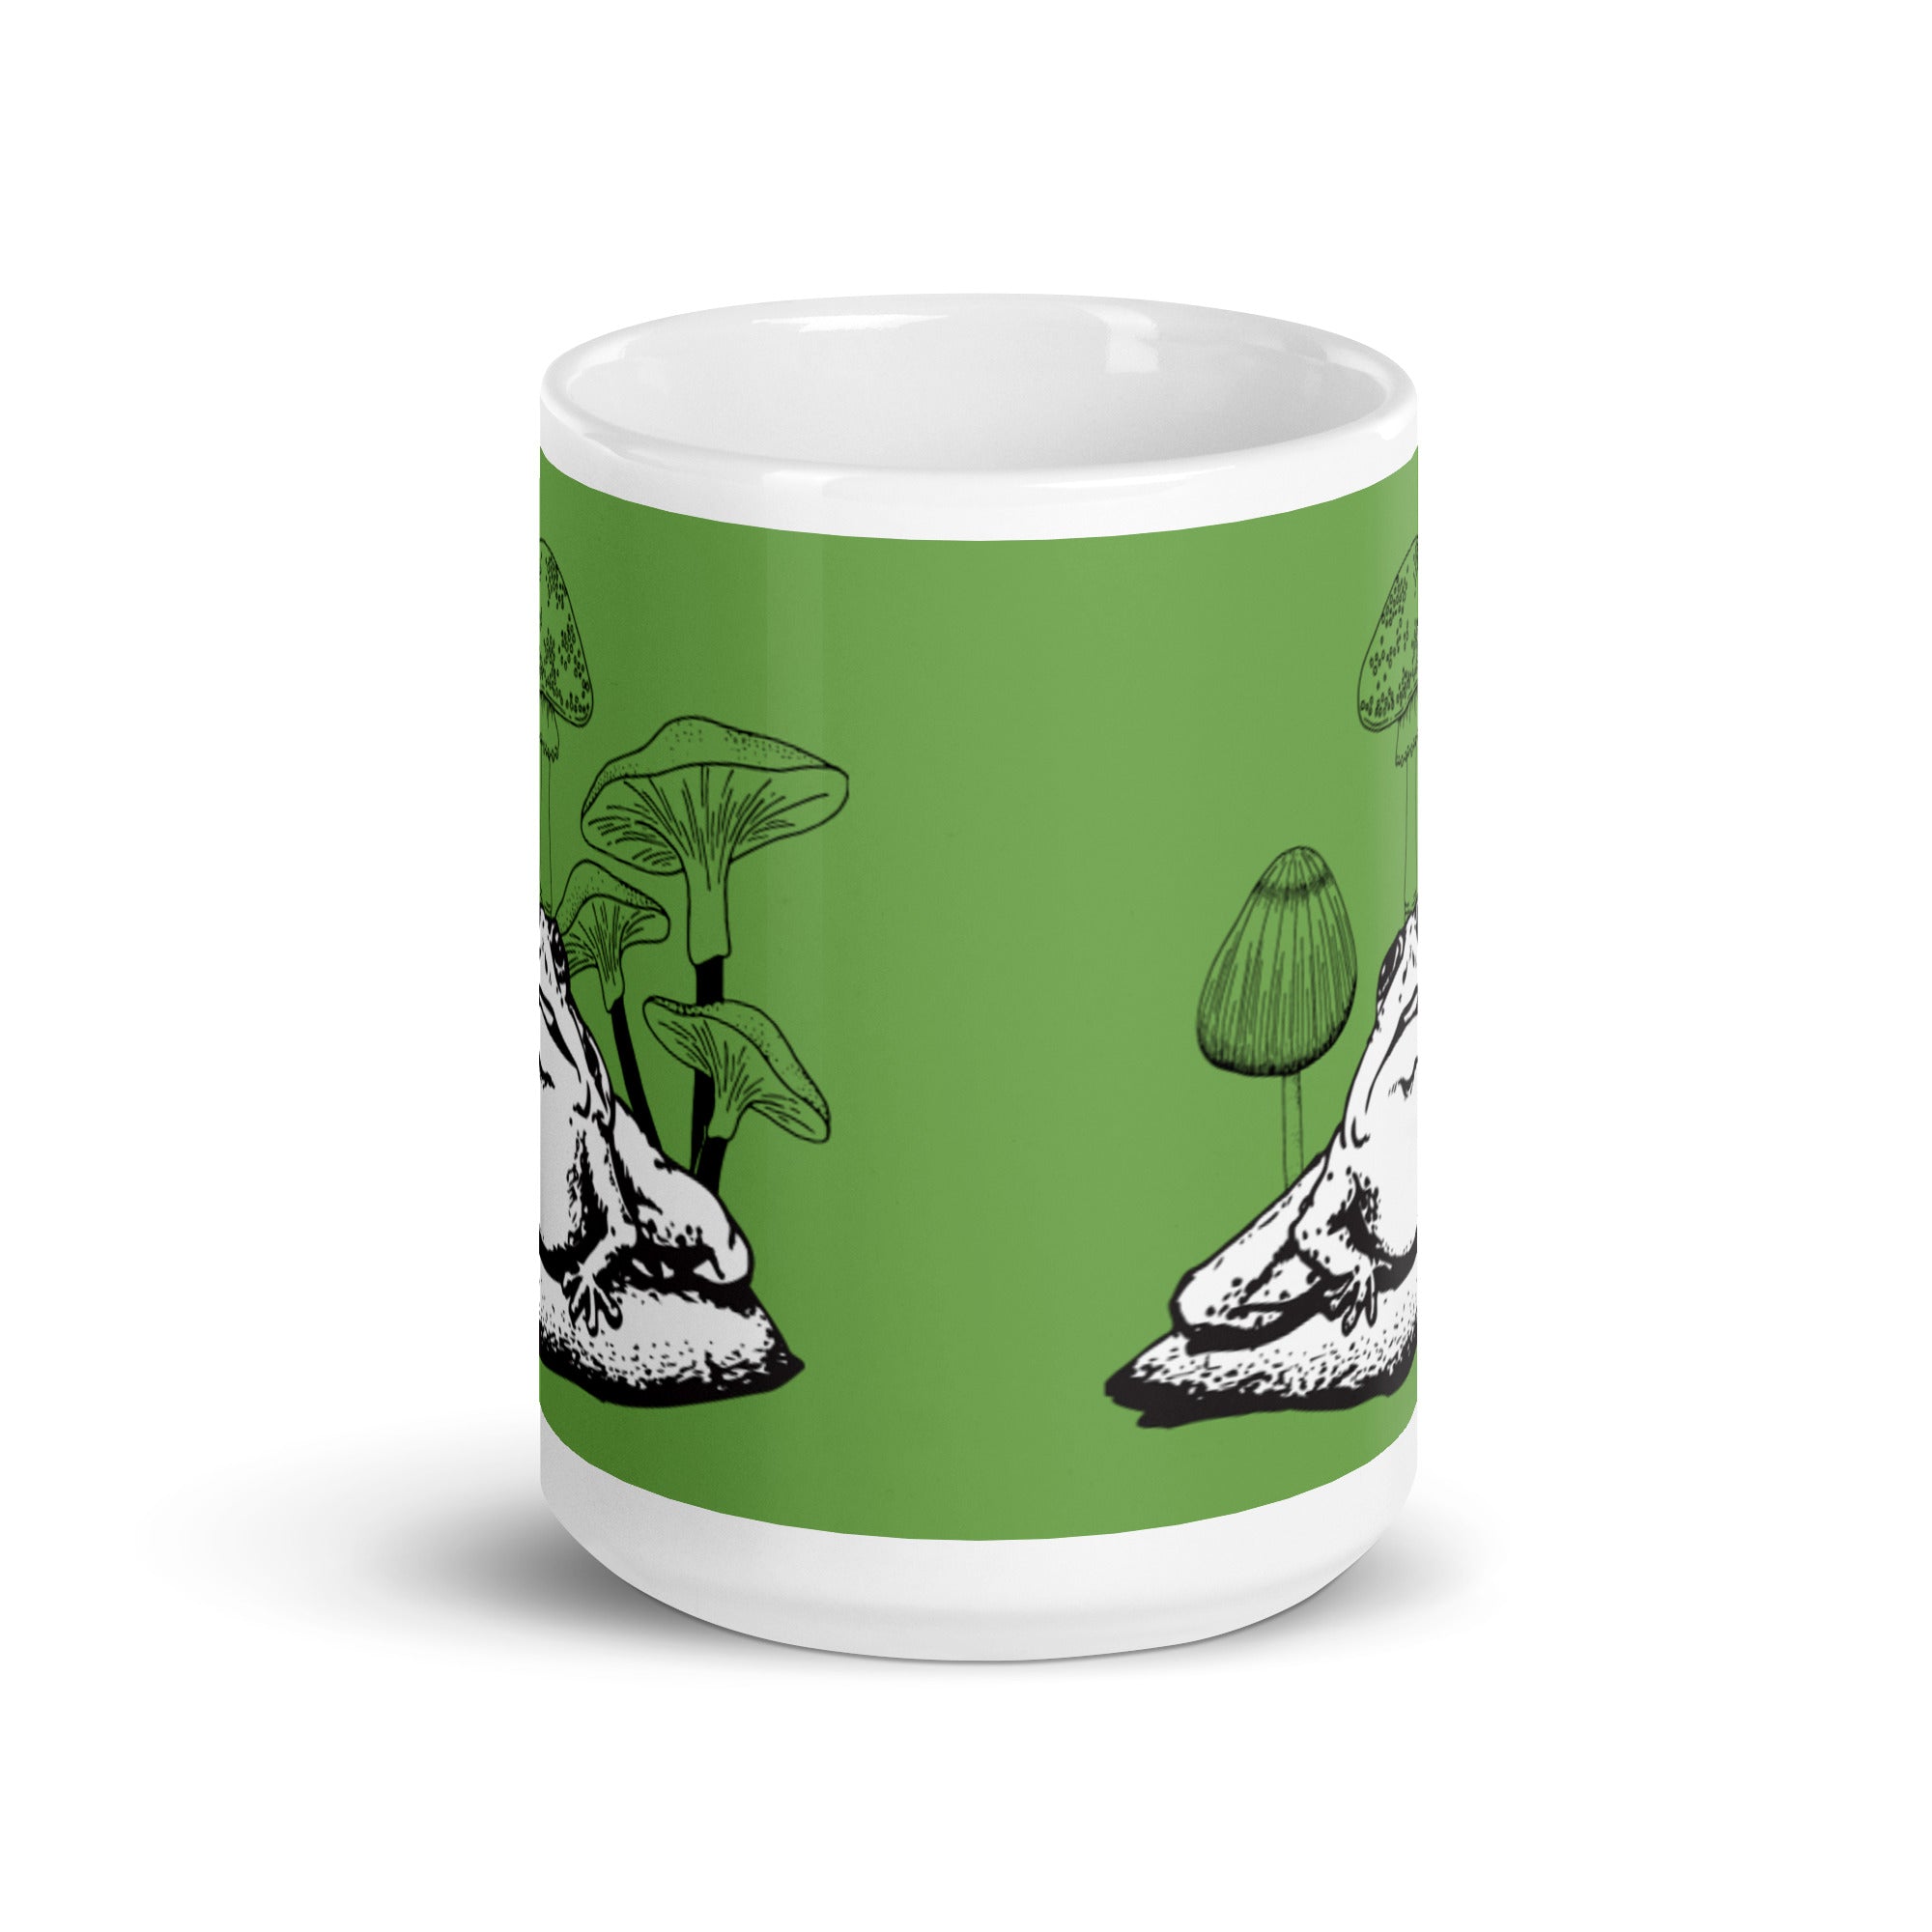 Frog and Mushroom Mug